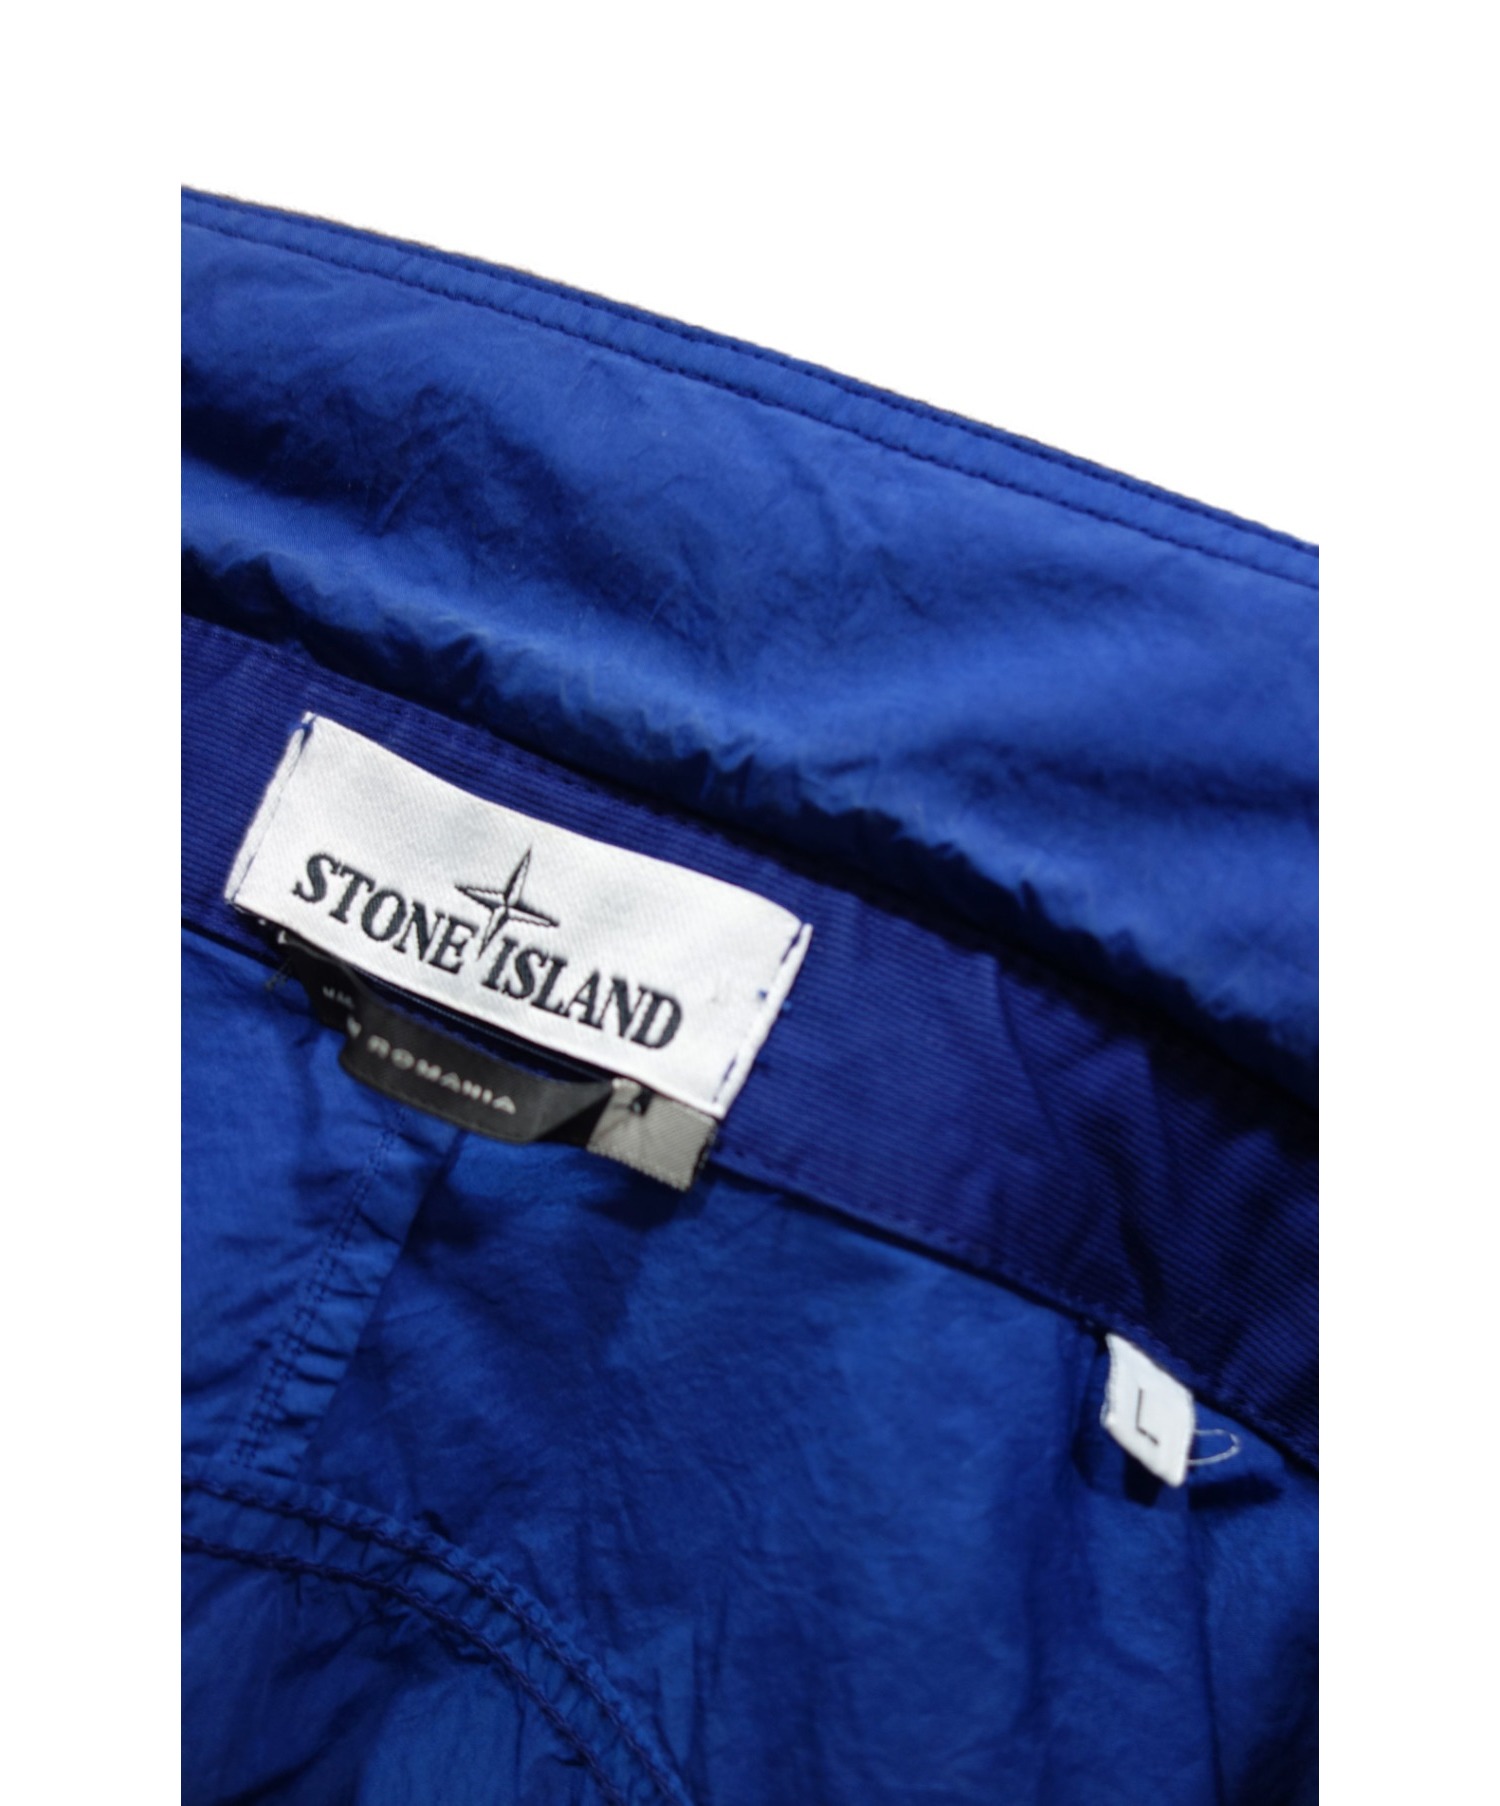 STONE ISLAND (ストーンアイランド) ジップアップシャツジャケット ブルー サイズ:L 621510507